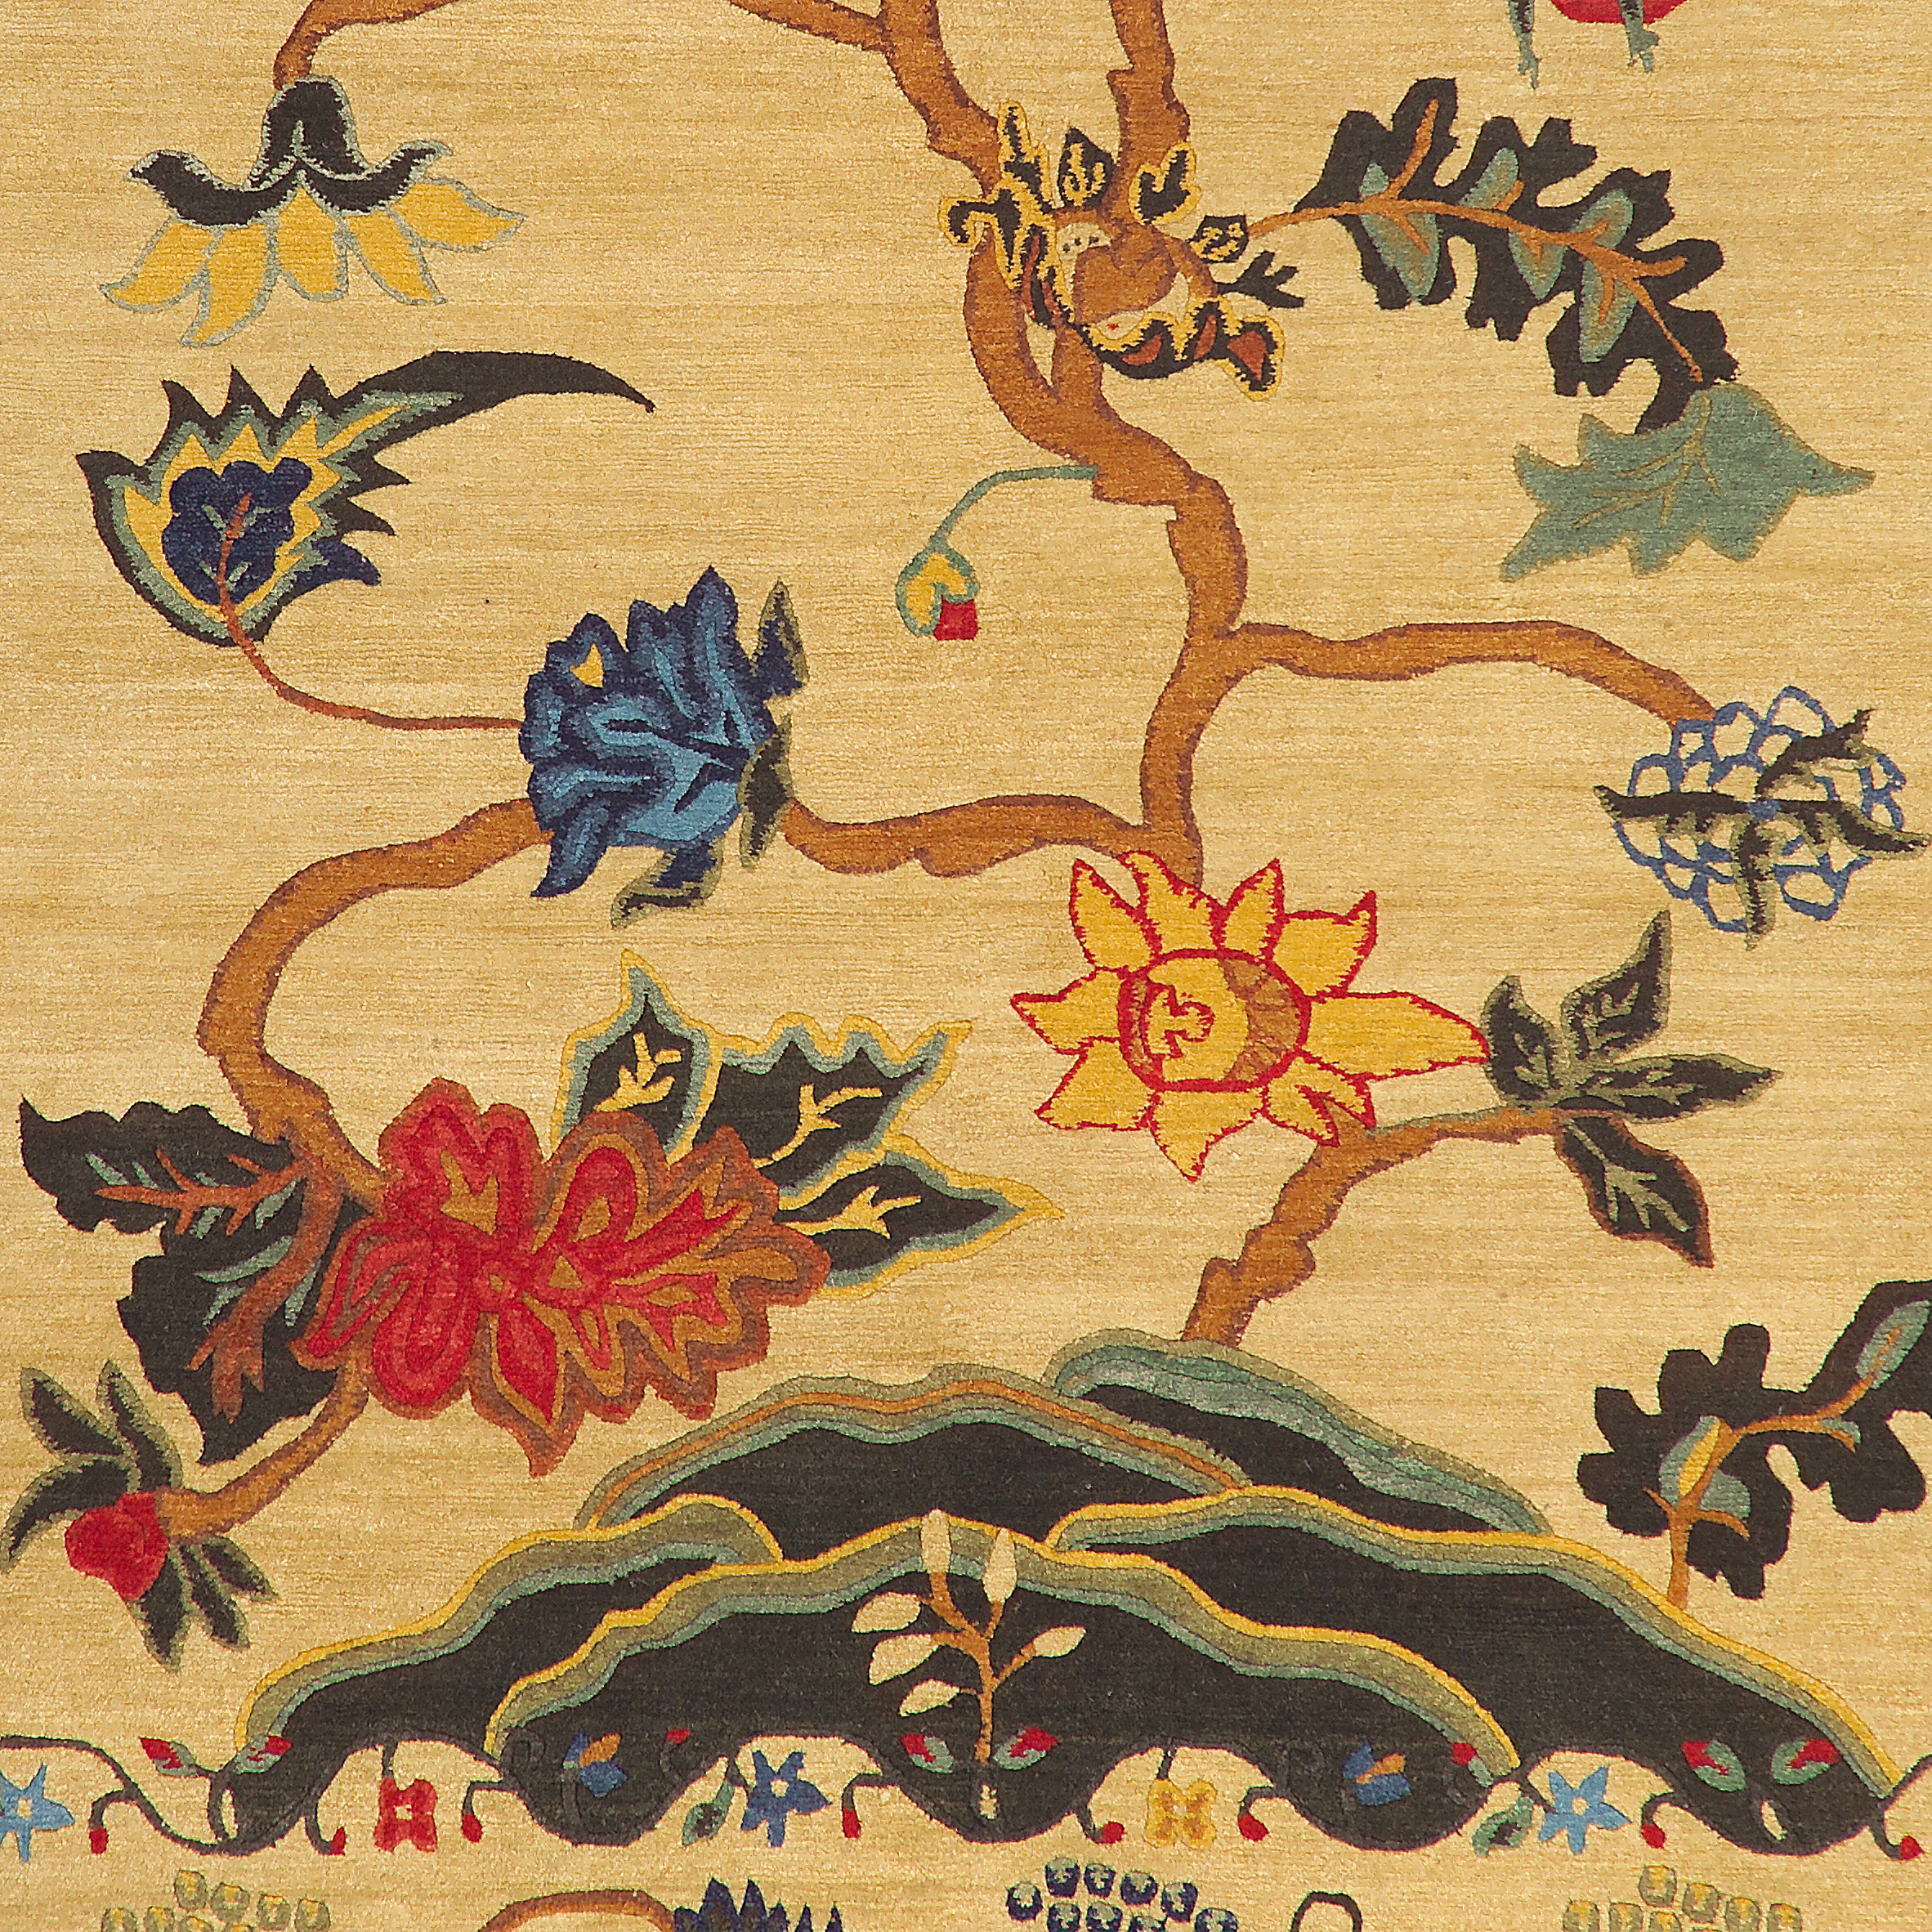 Geba Teppich "Manor 1" in beige mit floraler Bordüre und Lebensbaum in der Mitte, aus Nepal, 150 Knoten, gefertigt aus tibetischer Hochlandschafwolle - Produktbild - Geba Teppich